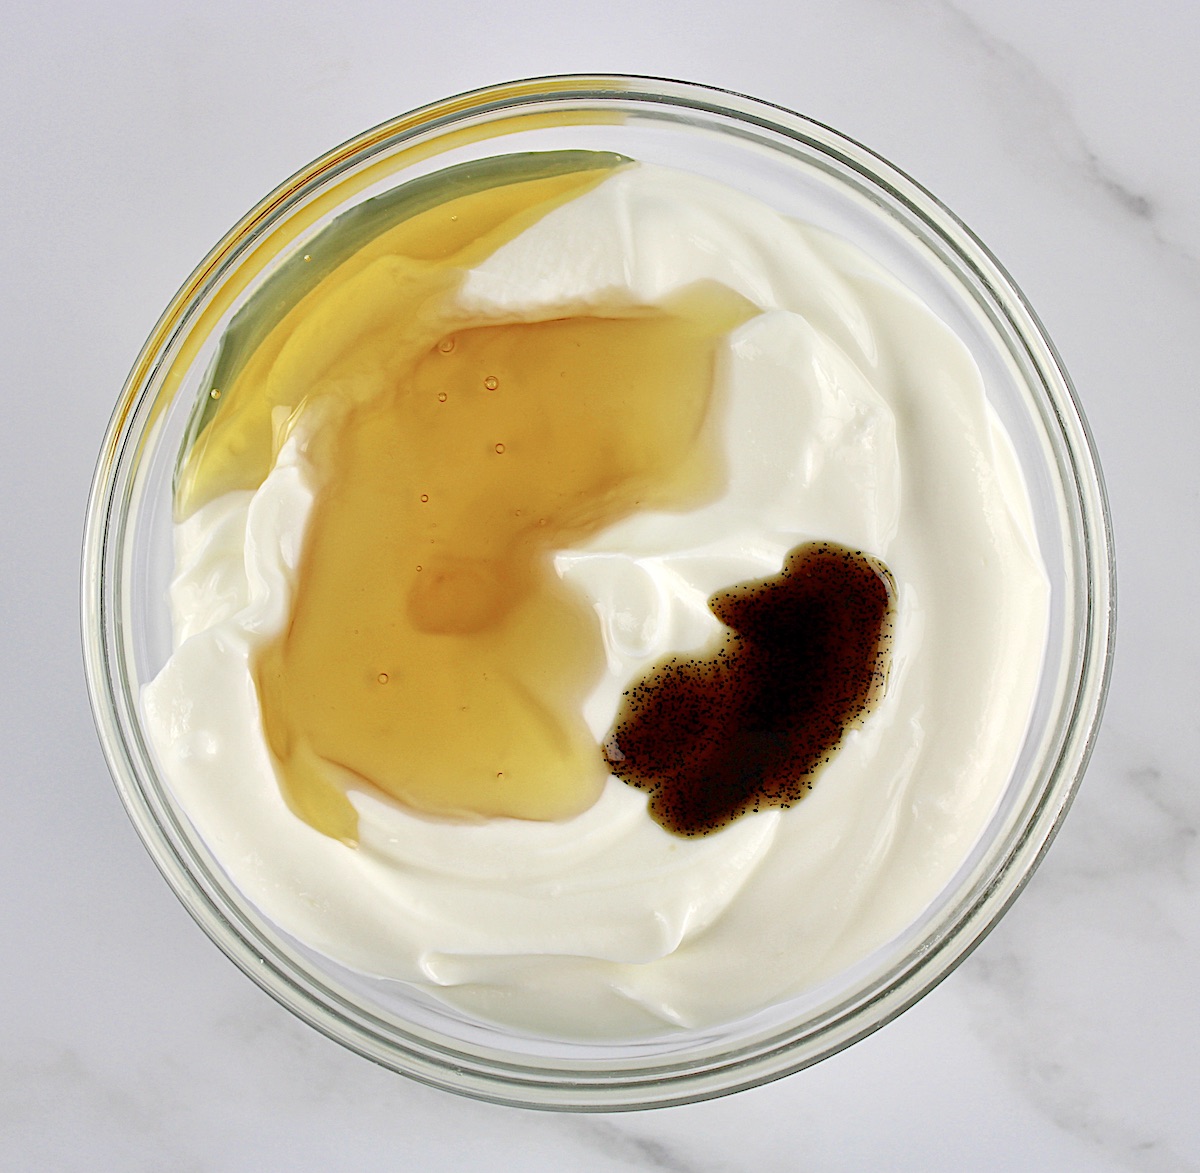 yogurt, vanilla and honey in glass bowl unmixed